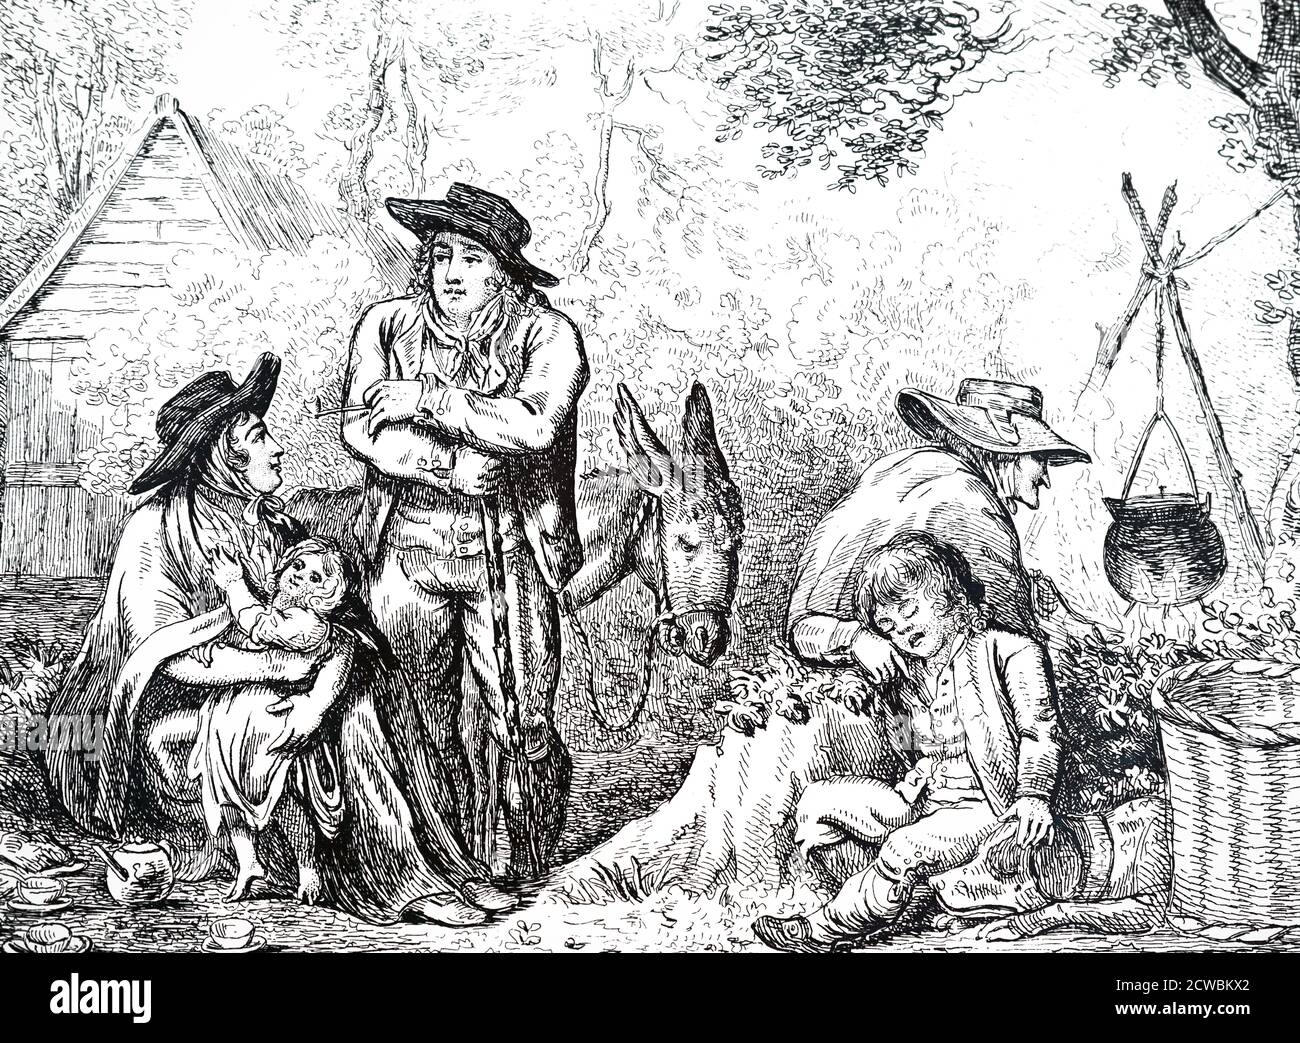 Gravur, die eine Familie von Wanderverkäufern von Staffordshire Ware in ihrem Abendlager zeigt. Illustriert von George Moutard Woodward und geätzt von Isaac Cruikshank. Stockfoto